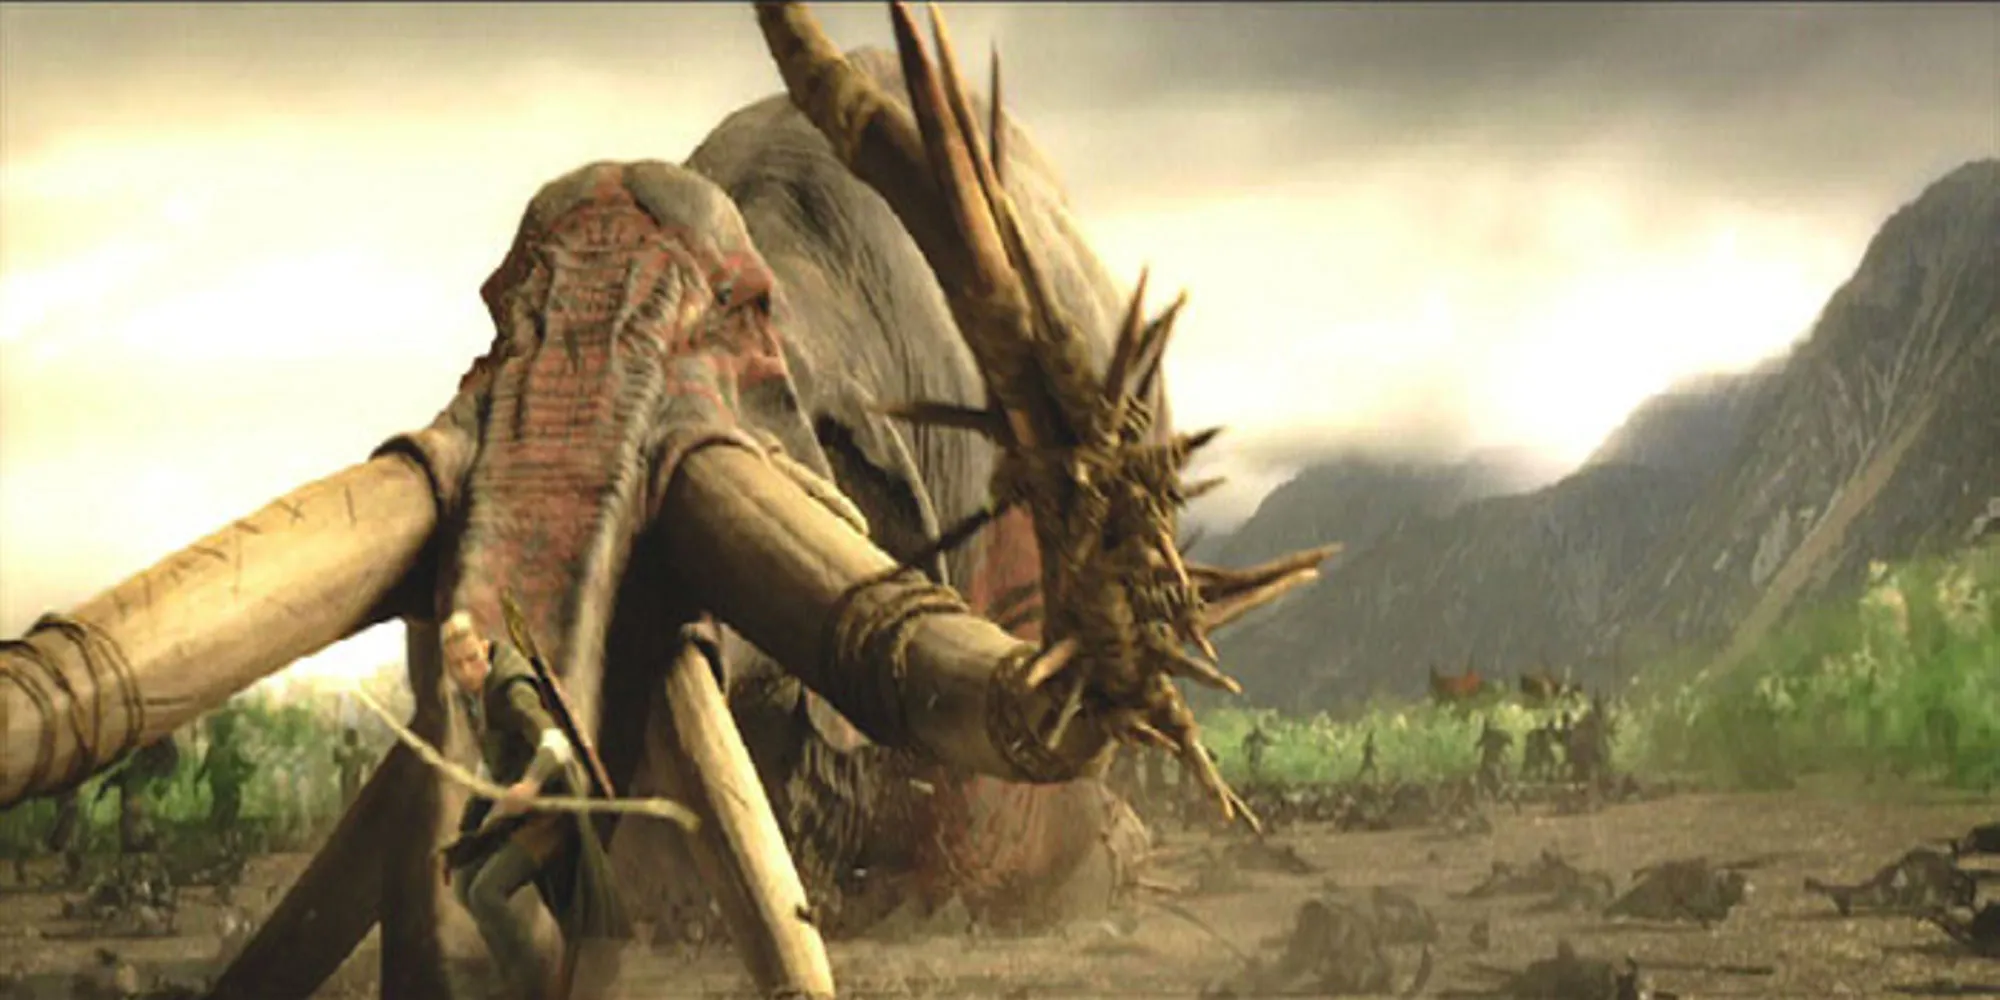 Legolas가 방금 죽인 무야킬 (oliphant)의 줄기를 타고 내려오고 있습니다.